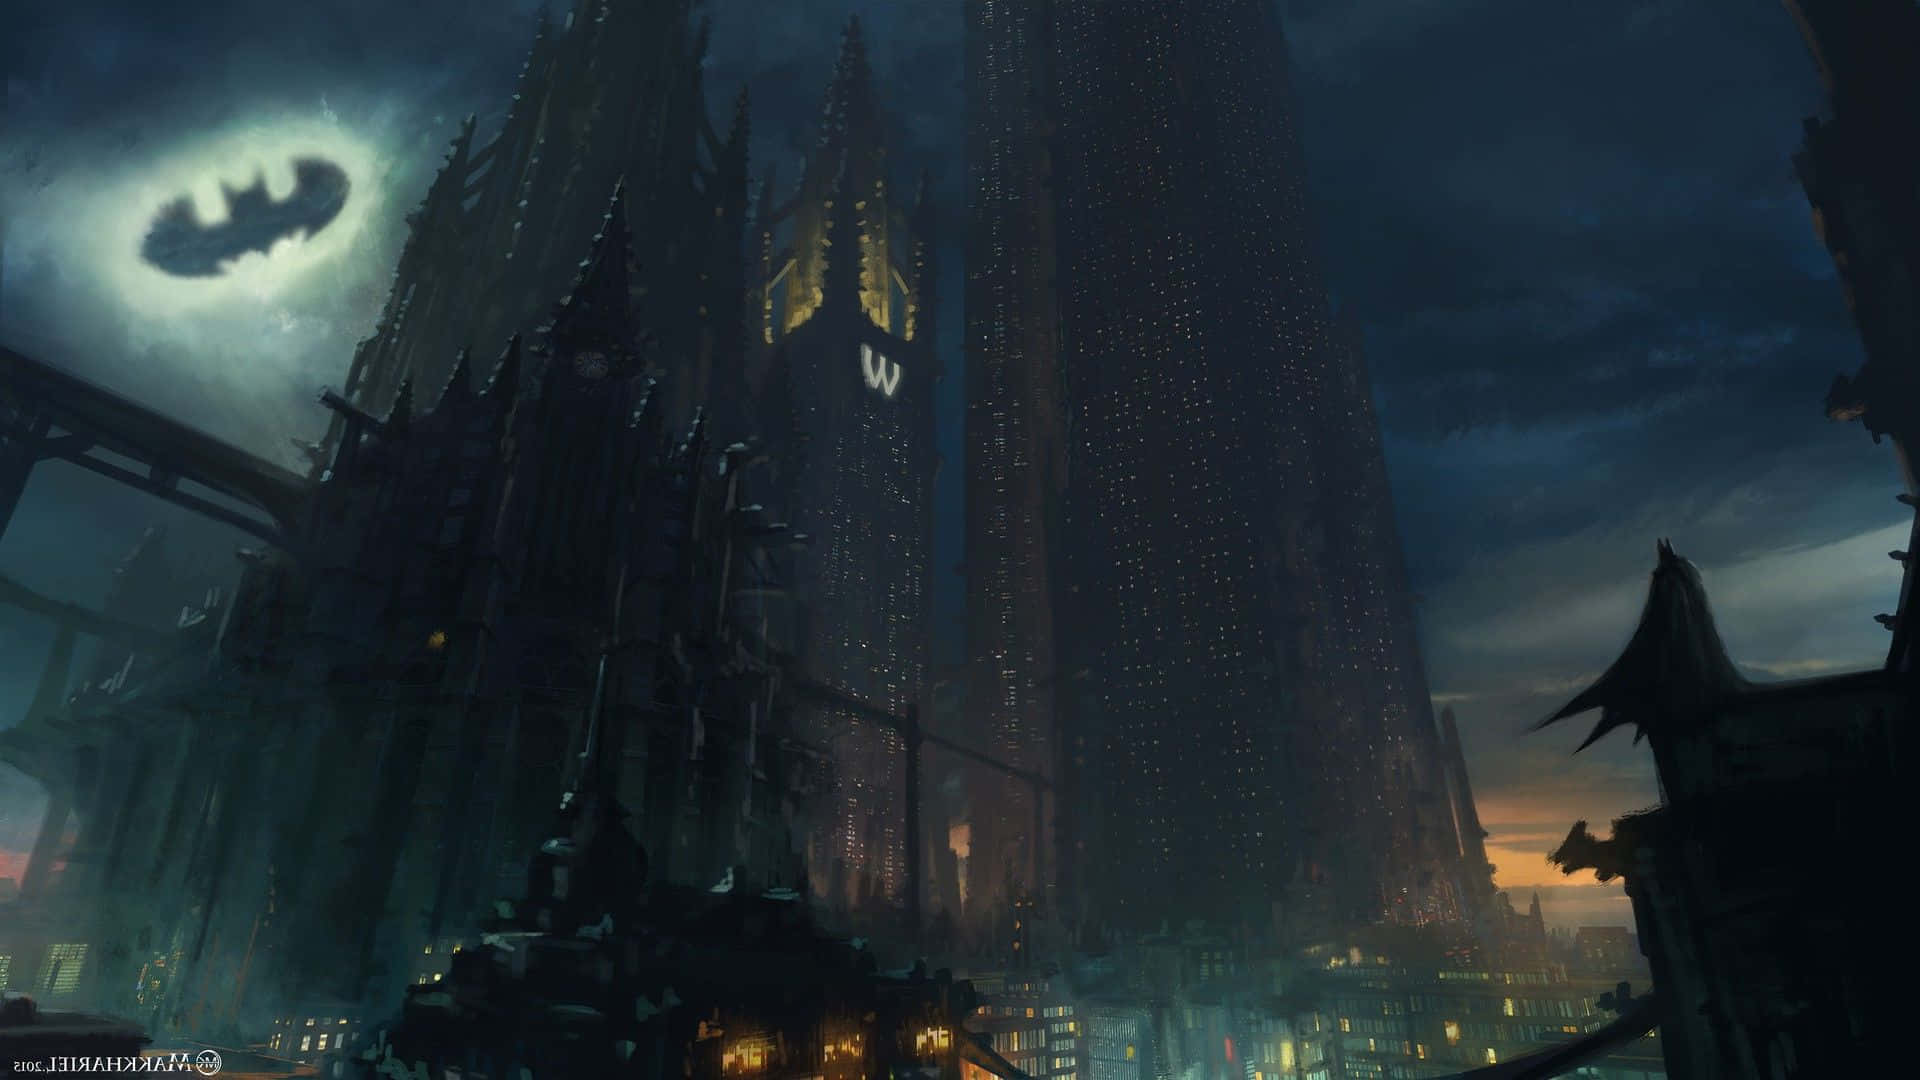 Lavista Desde Arriba: Contempla El Glorioso Paisaje De La Ciudad De Gotham. Fondo de pantalla